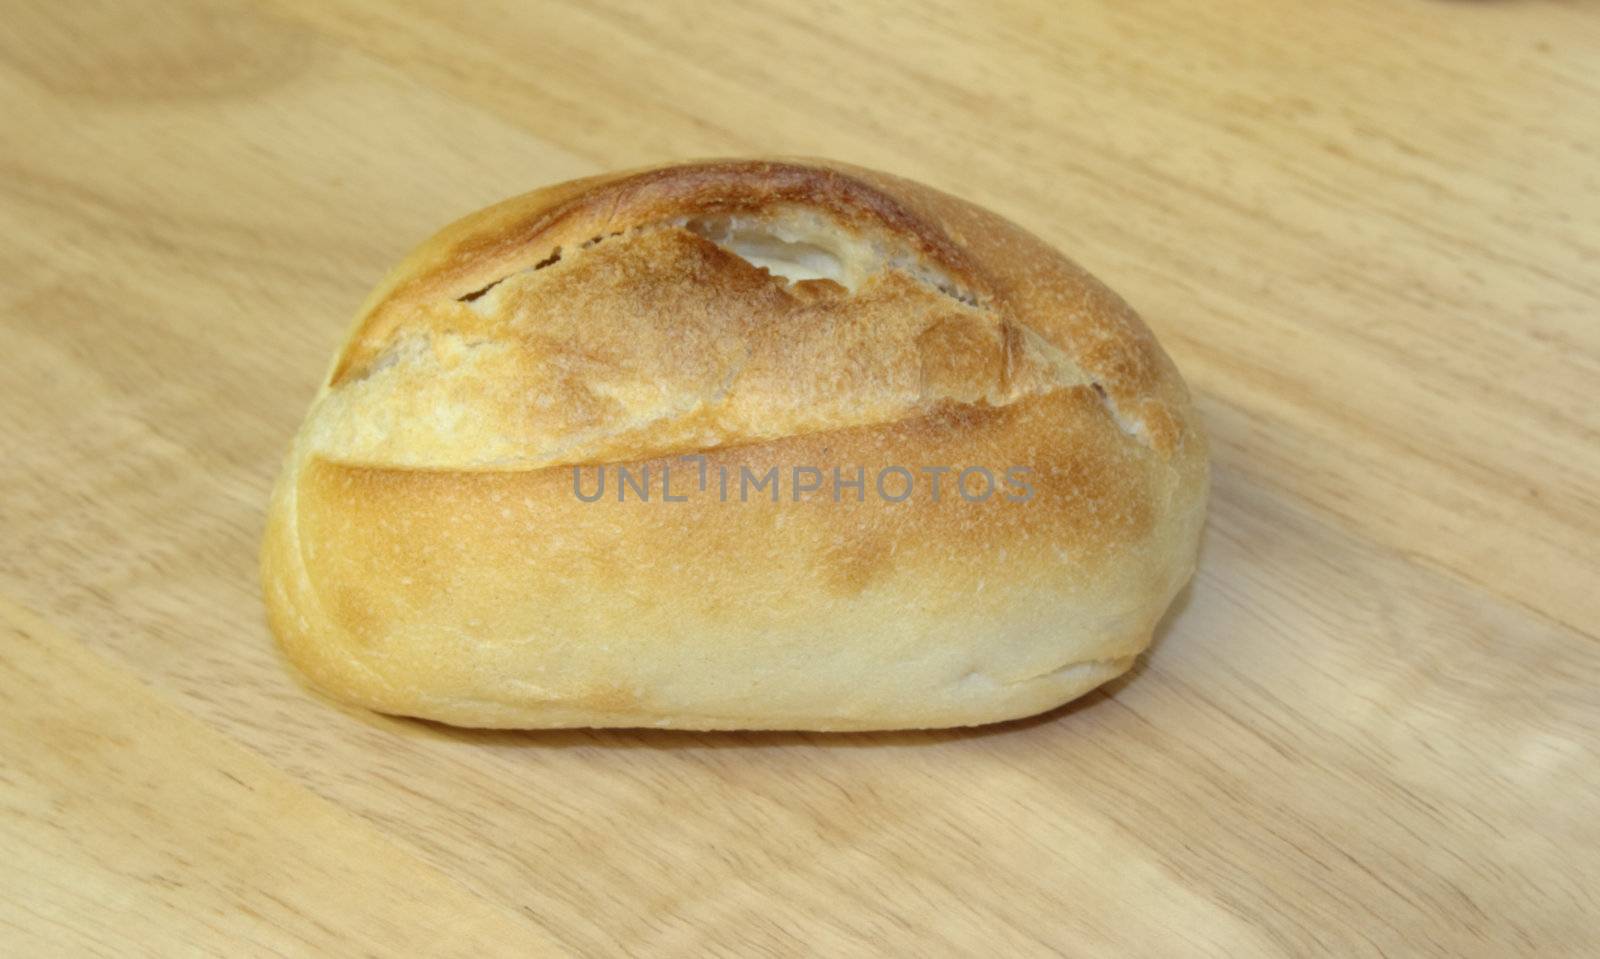 bread roll on a wooden board